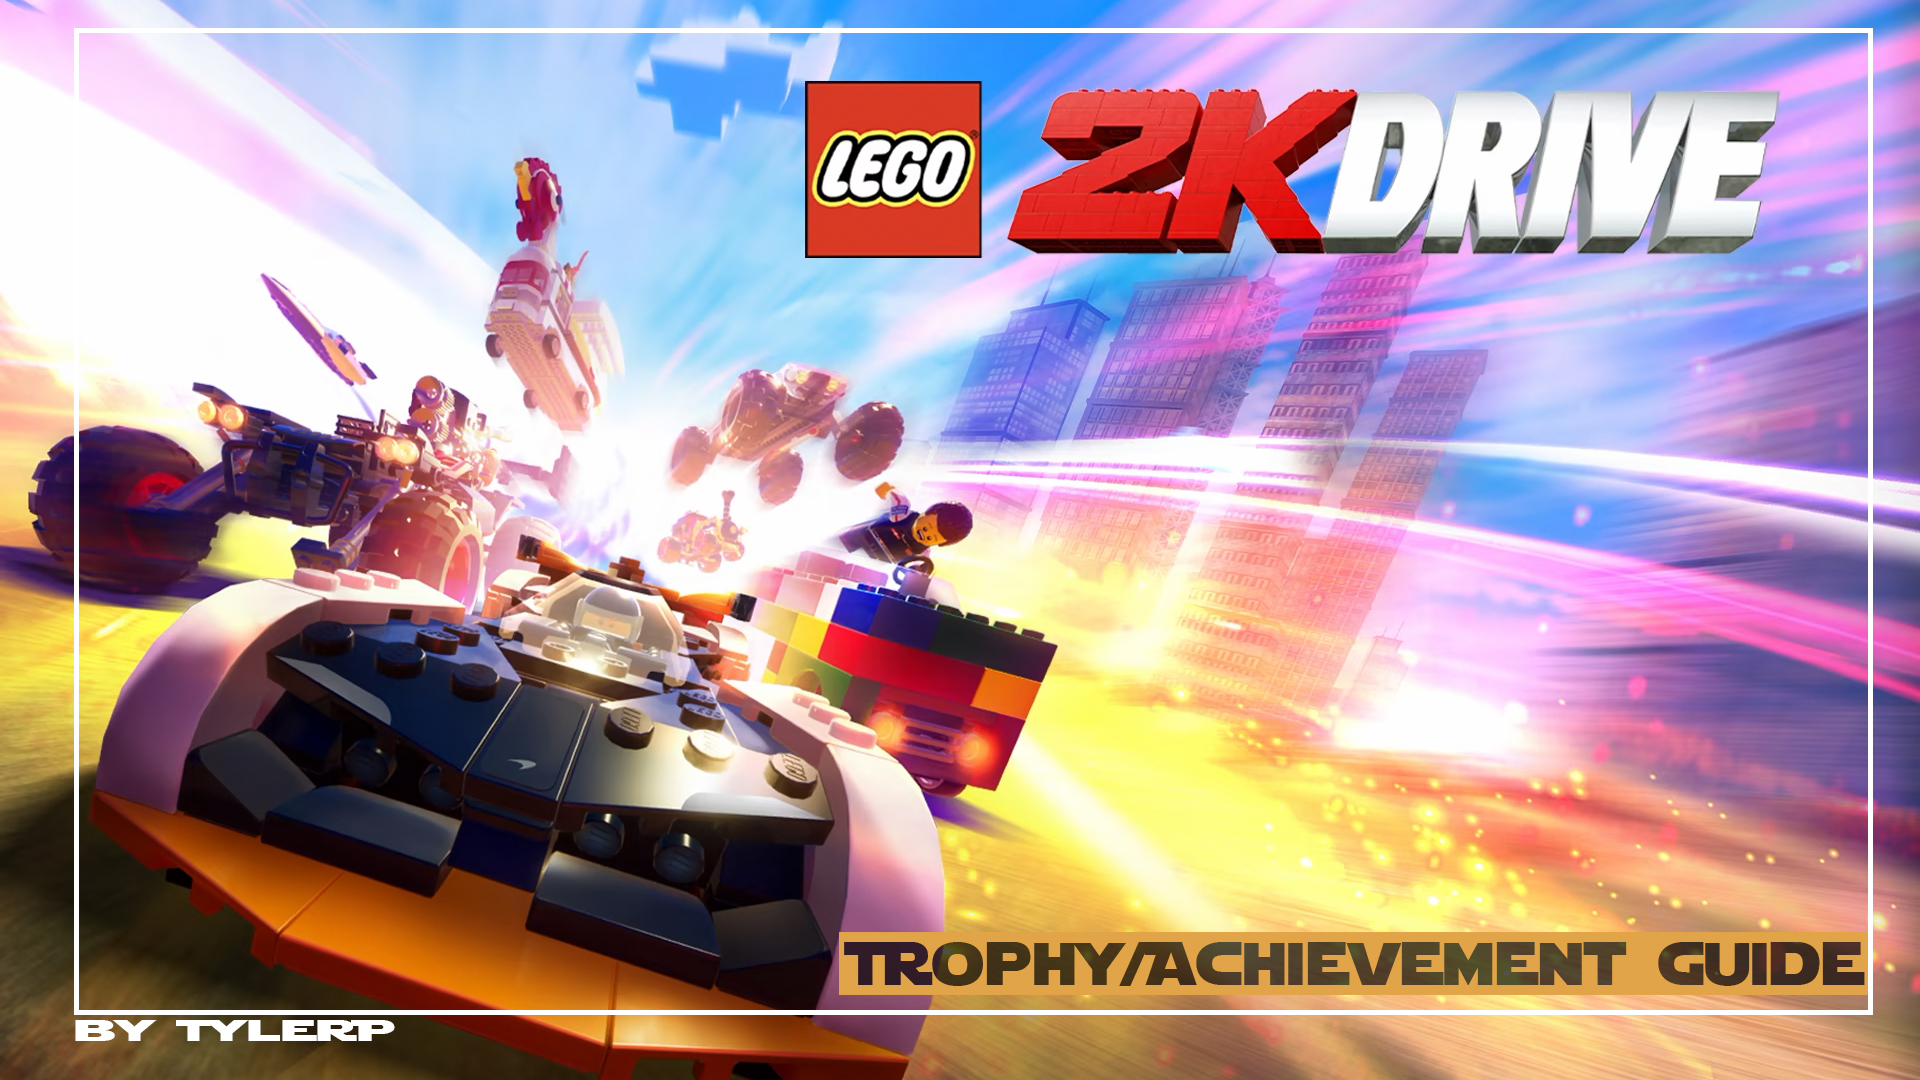 LEGO 2K Drive Trophy/Achievement Guide